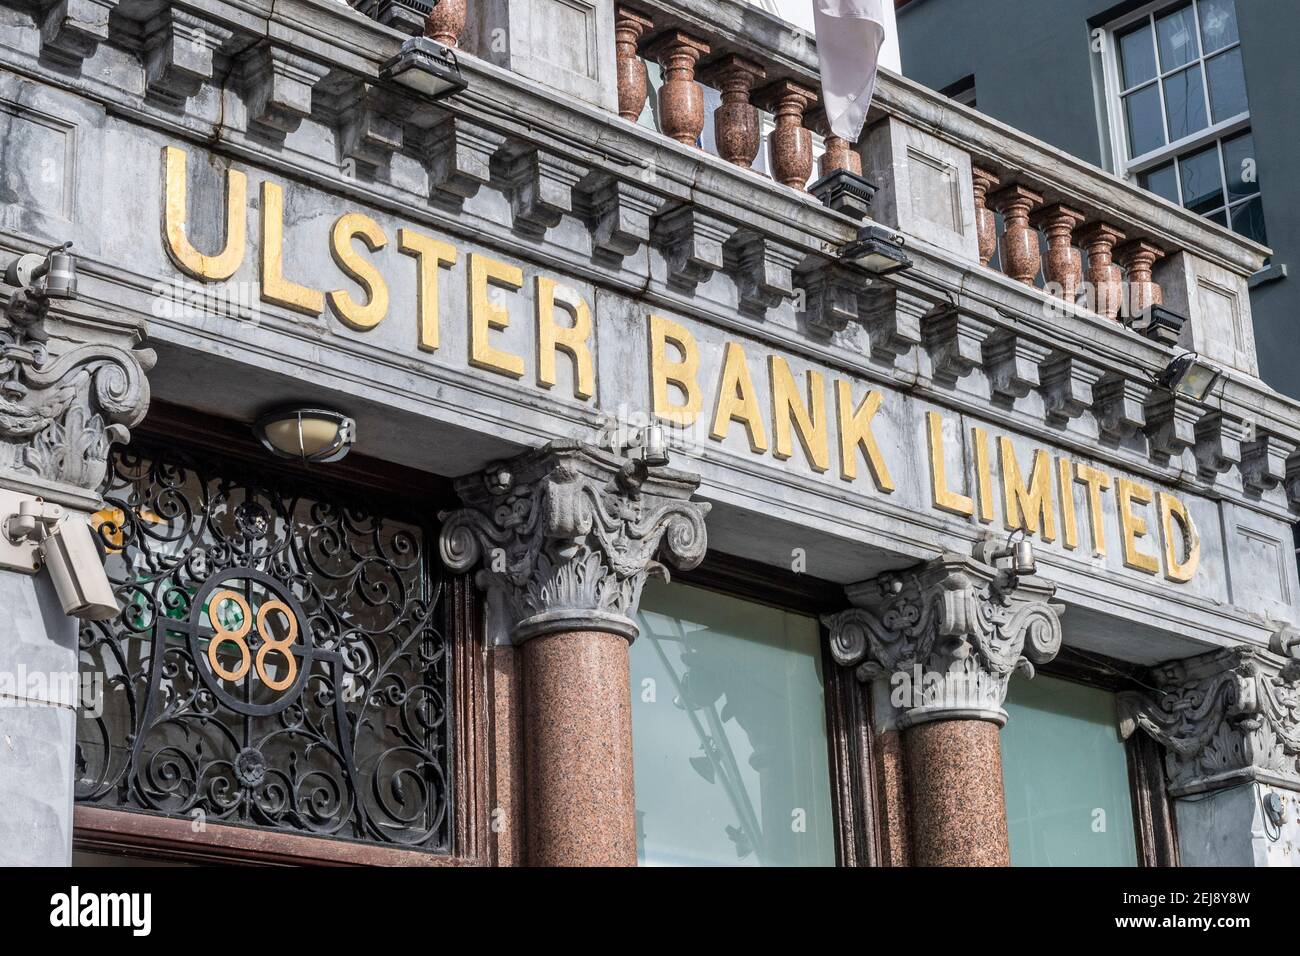 Außenansicht der Ulster Bank Niederlassung in Patrick Street, Cork, Irland. Stockfoto